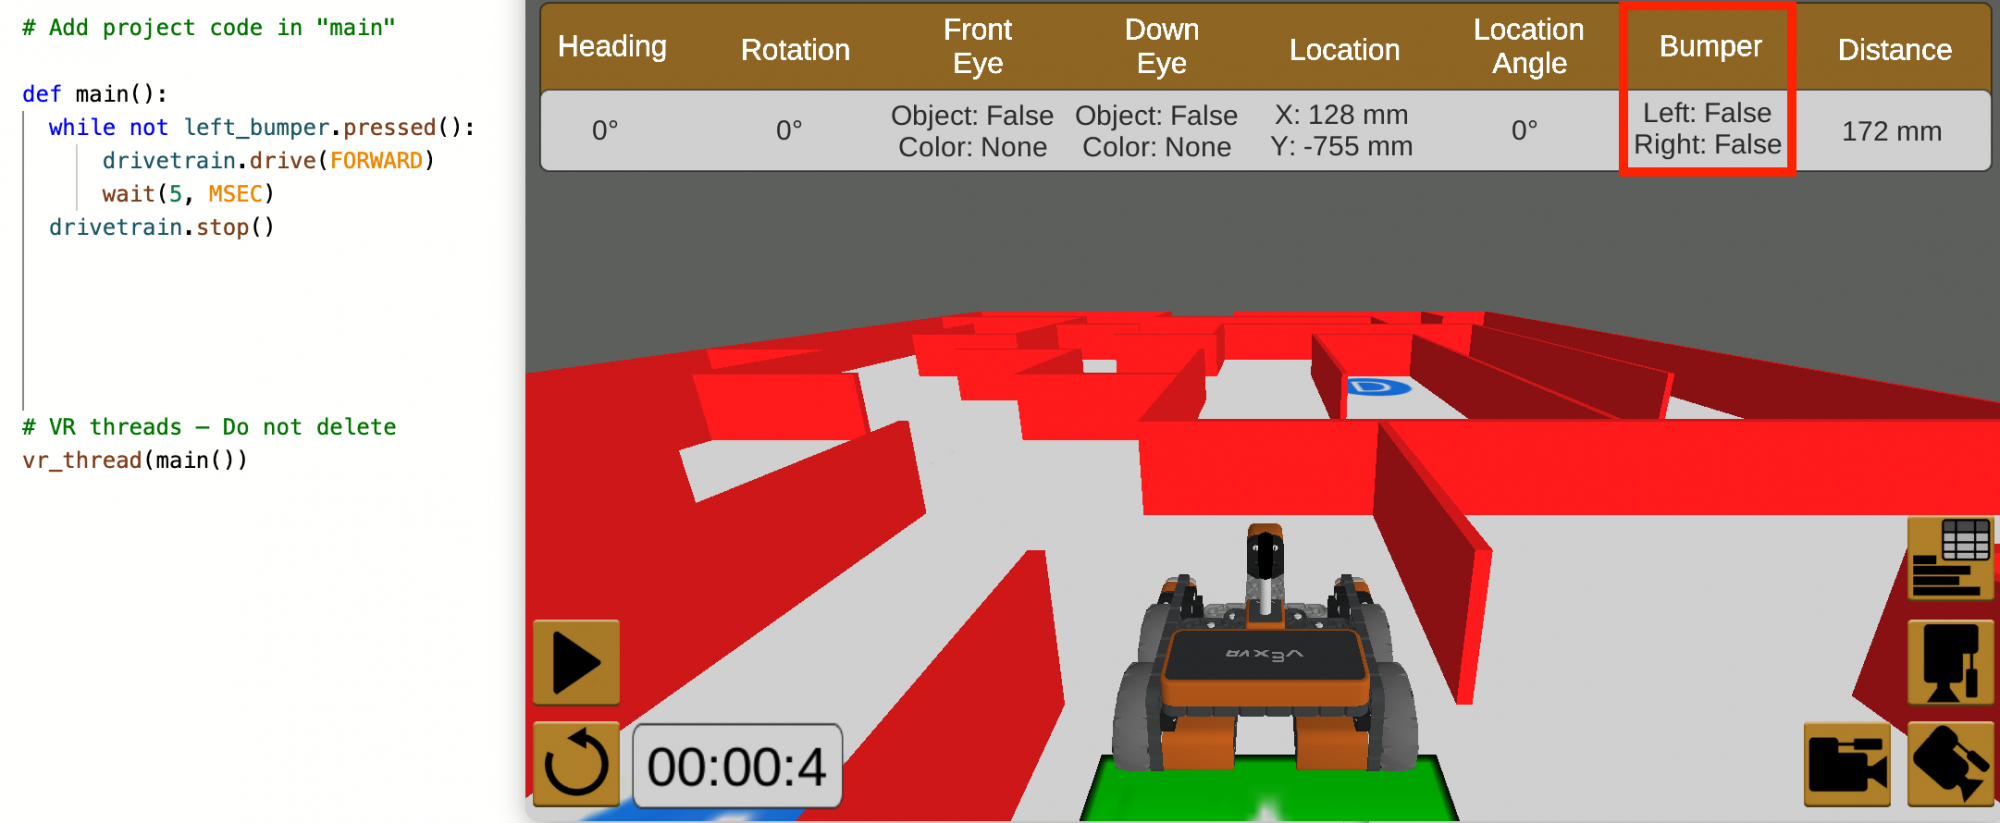 image of bumper sensor data reporting false in VR dashboard